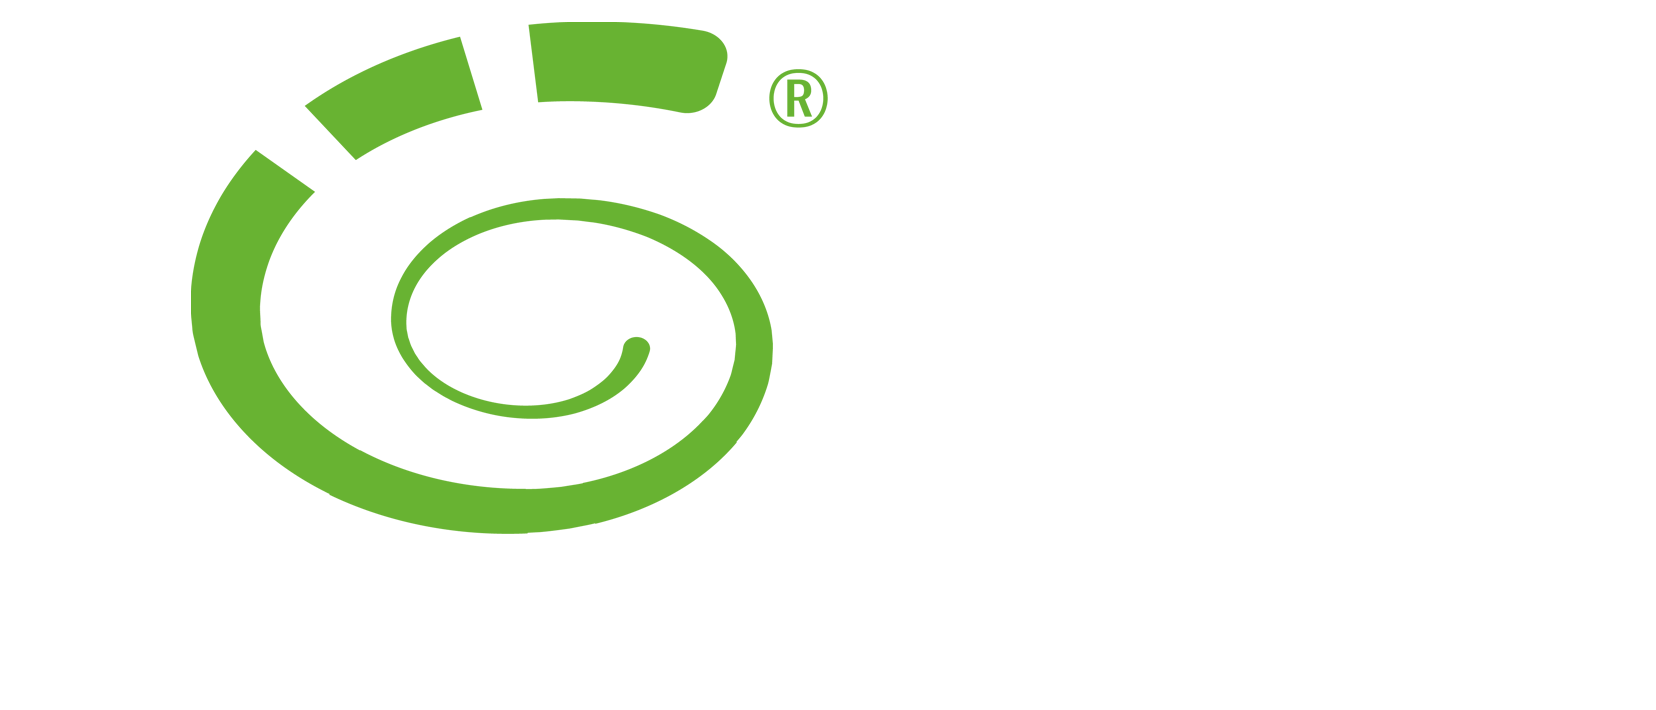 Das ÖKOPROFIT-Logo zeigt eine grüne, rechtsdrehende Schneckenform. die Strichstärke wird von Innen nach Aussen grösser. Die Spirale wird aussen zweimal unterbrochen, wodurch auch ein Ö zu erkennen ist.